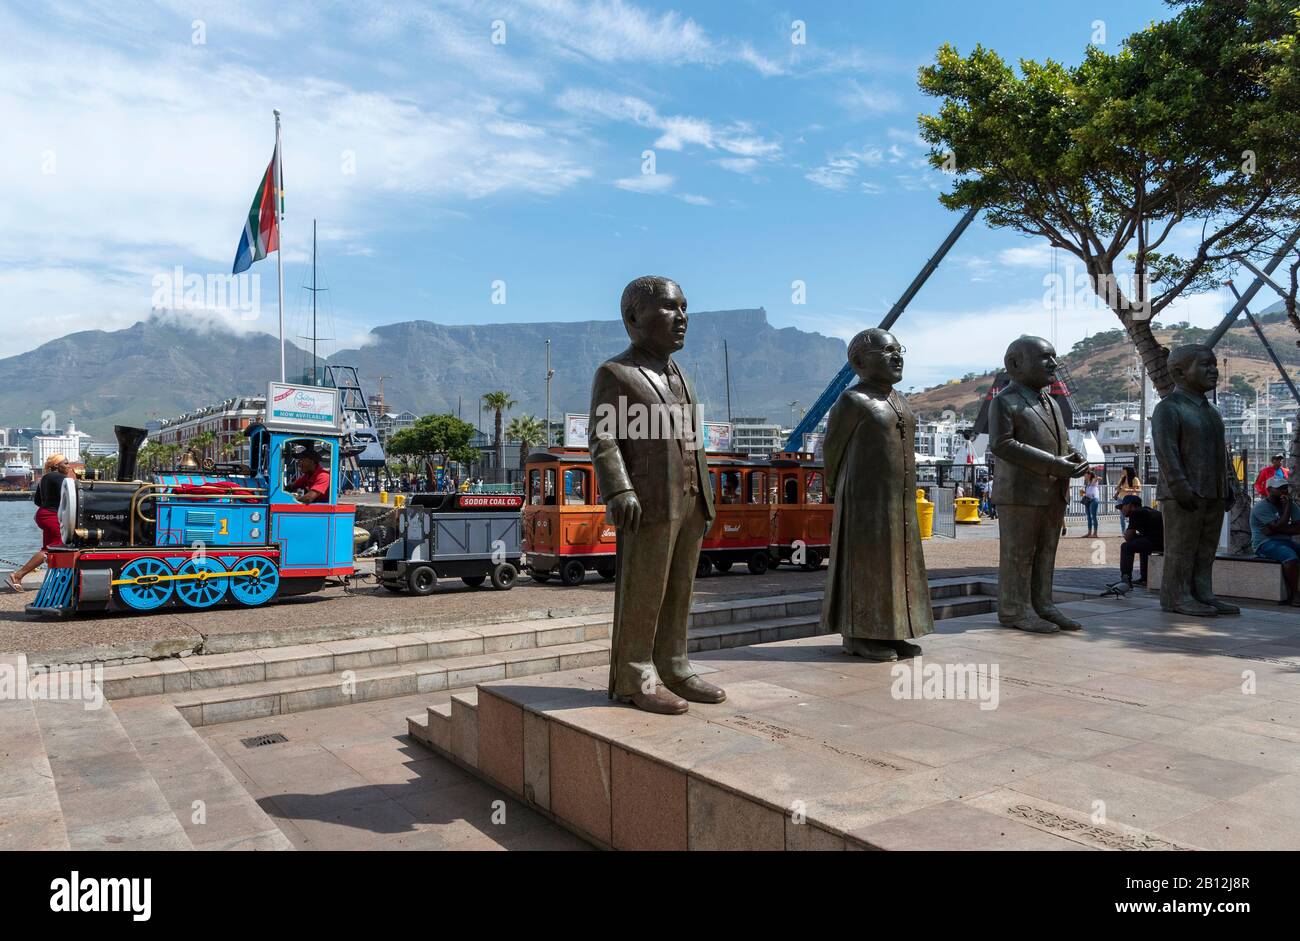 Kapstadt, Südafrika. Dezember 2019. Mit dem Kinderzug fahren Sie am Nobel-Platz und an den berühmten Staatsmännern am V&A-Ufer in Kapstadt vorbei Stockfoto